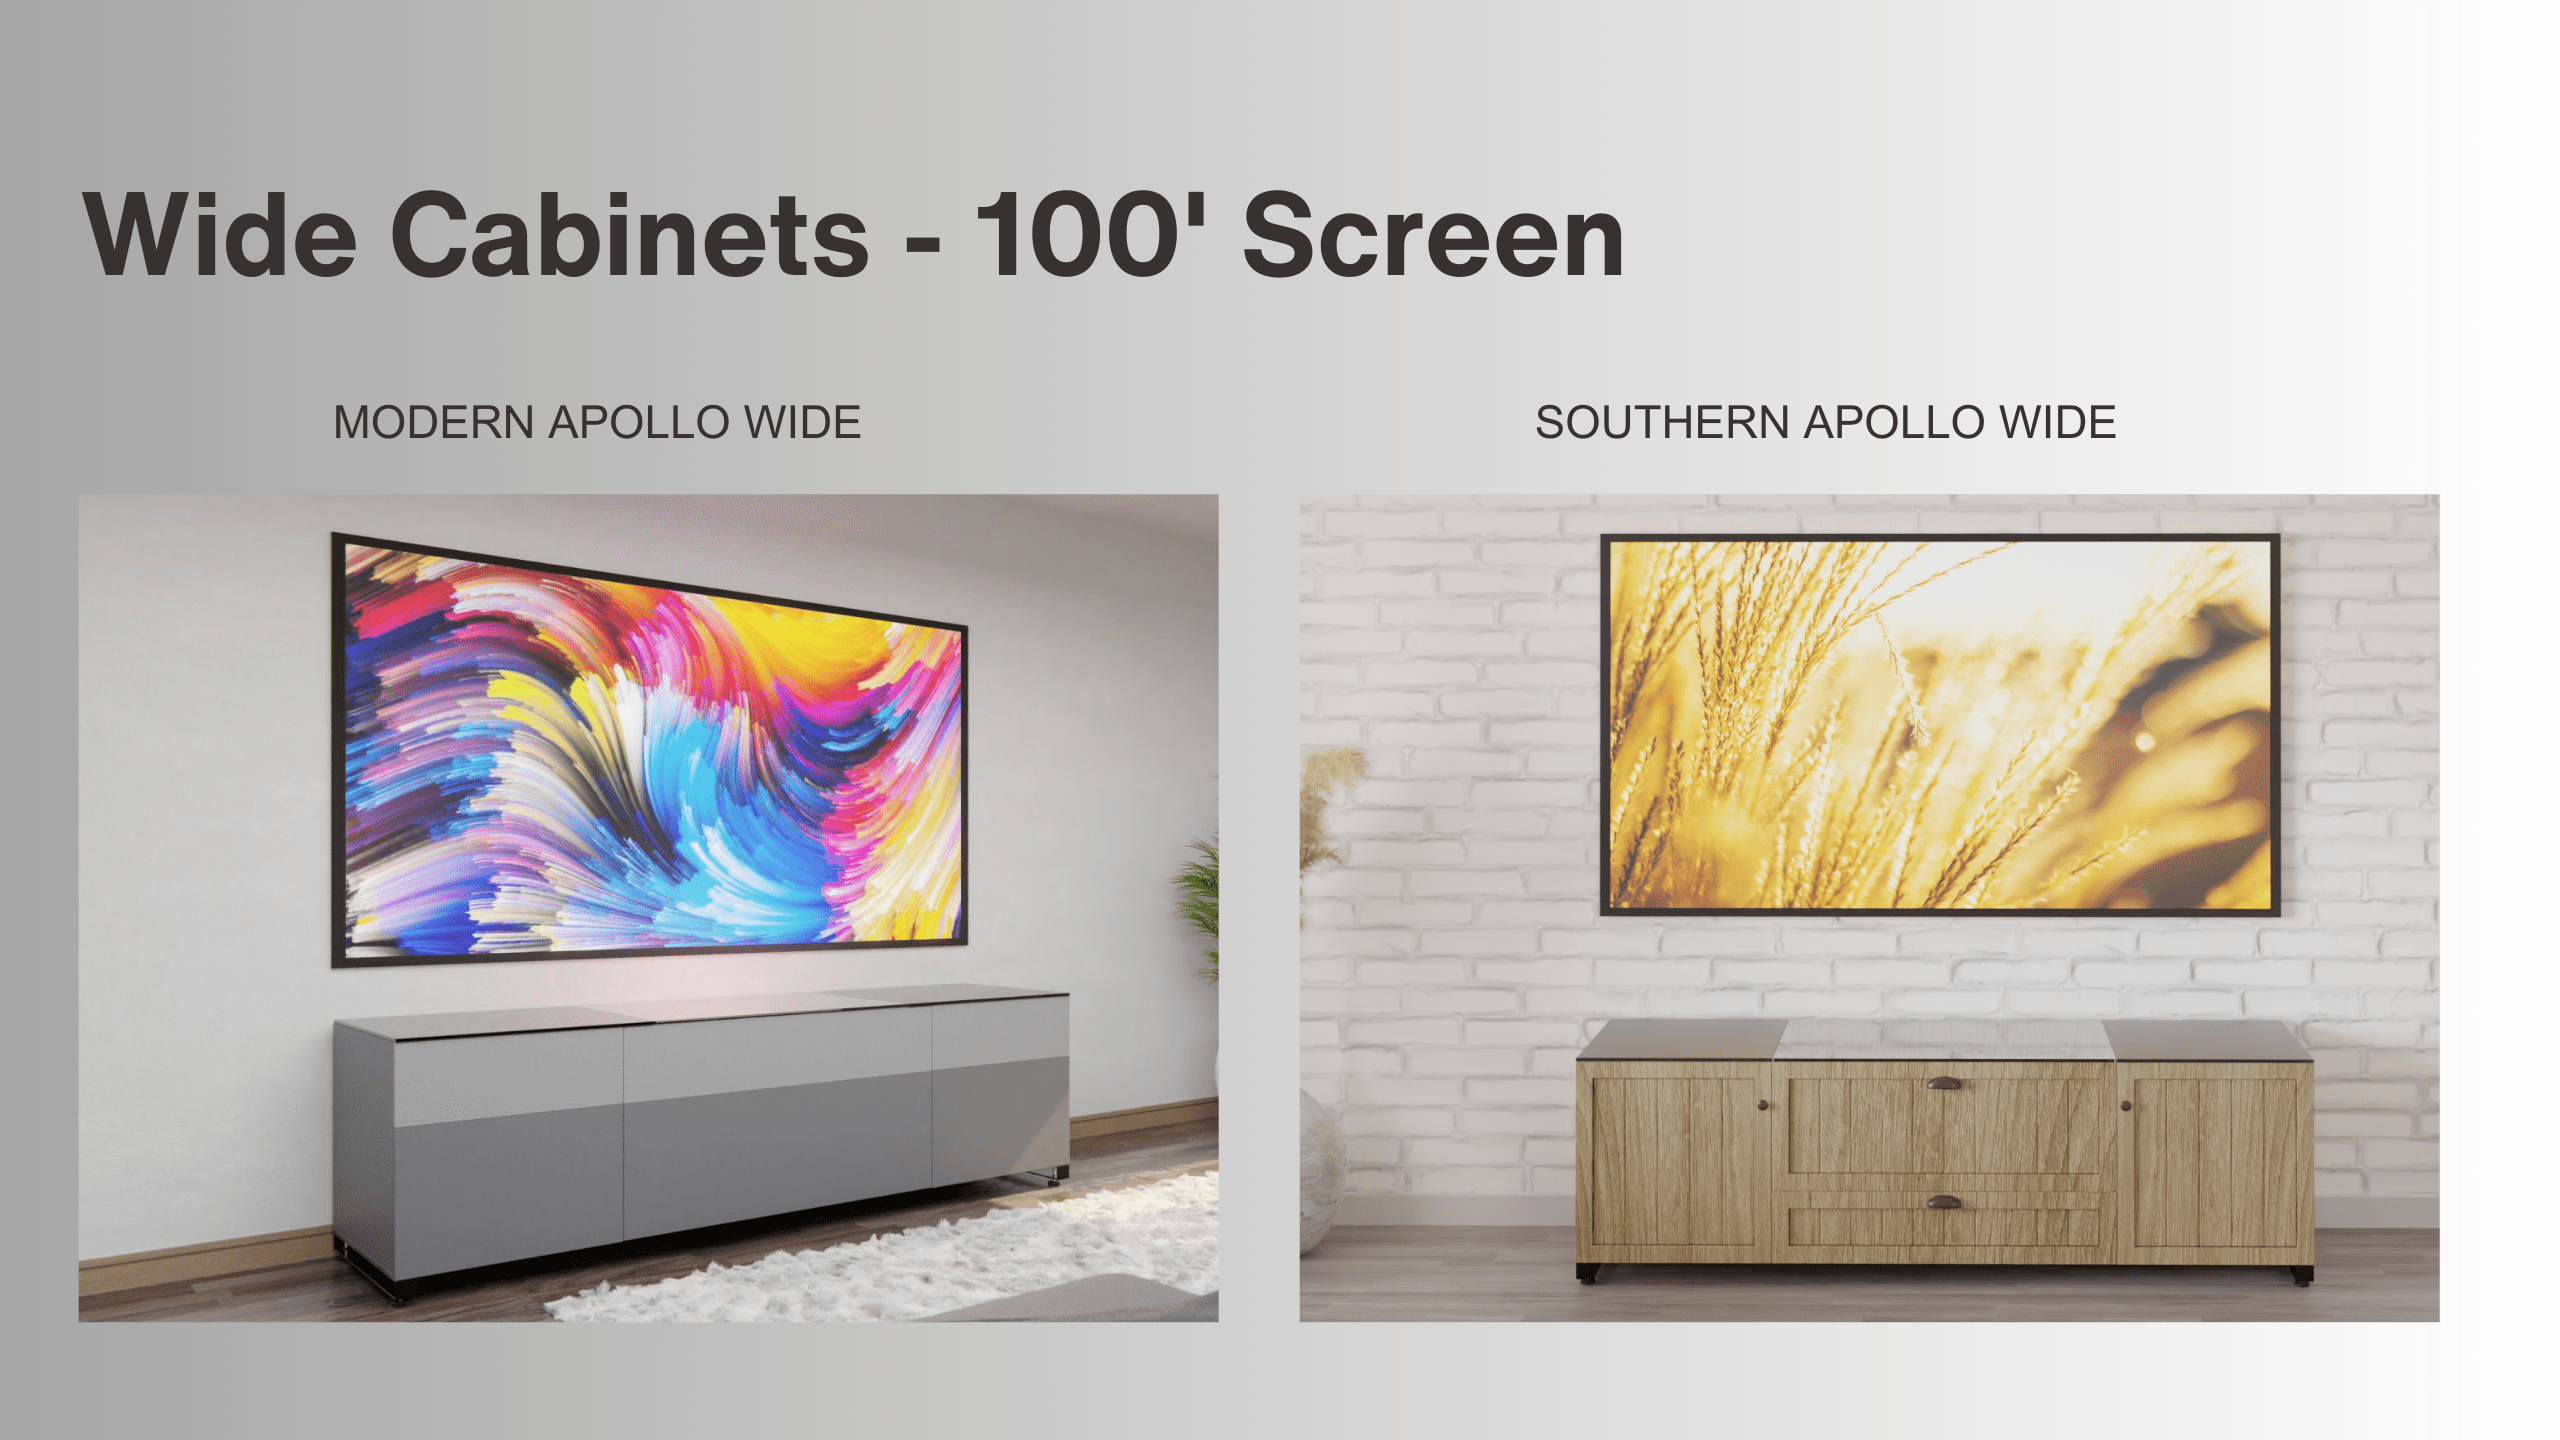 Wide Cabinets | 100' Screen | Apollo Wide | Aegis AV Cabinets